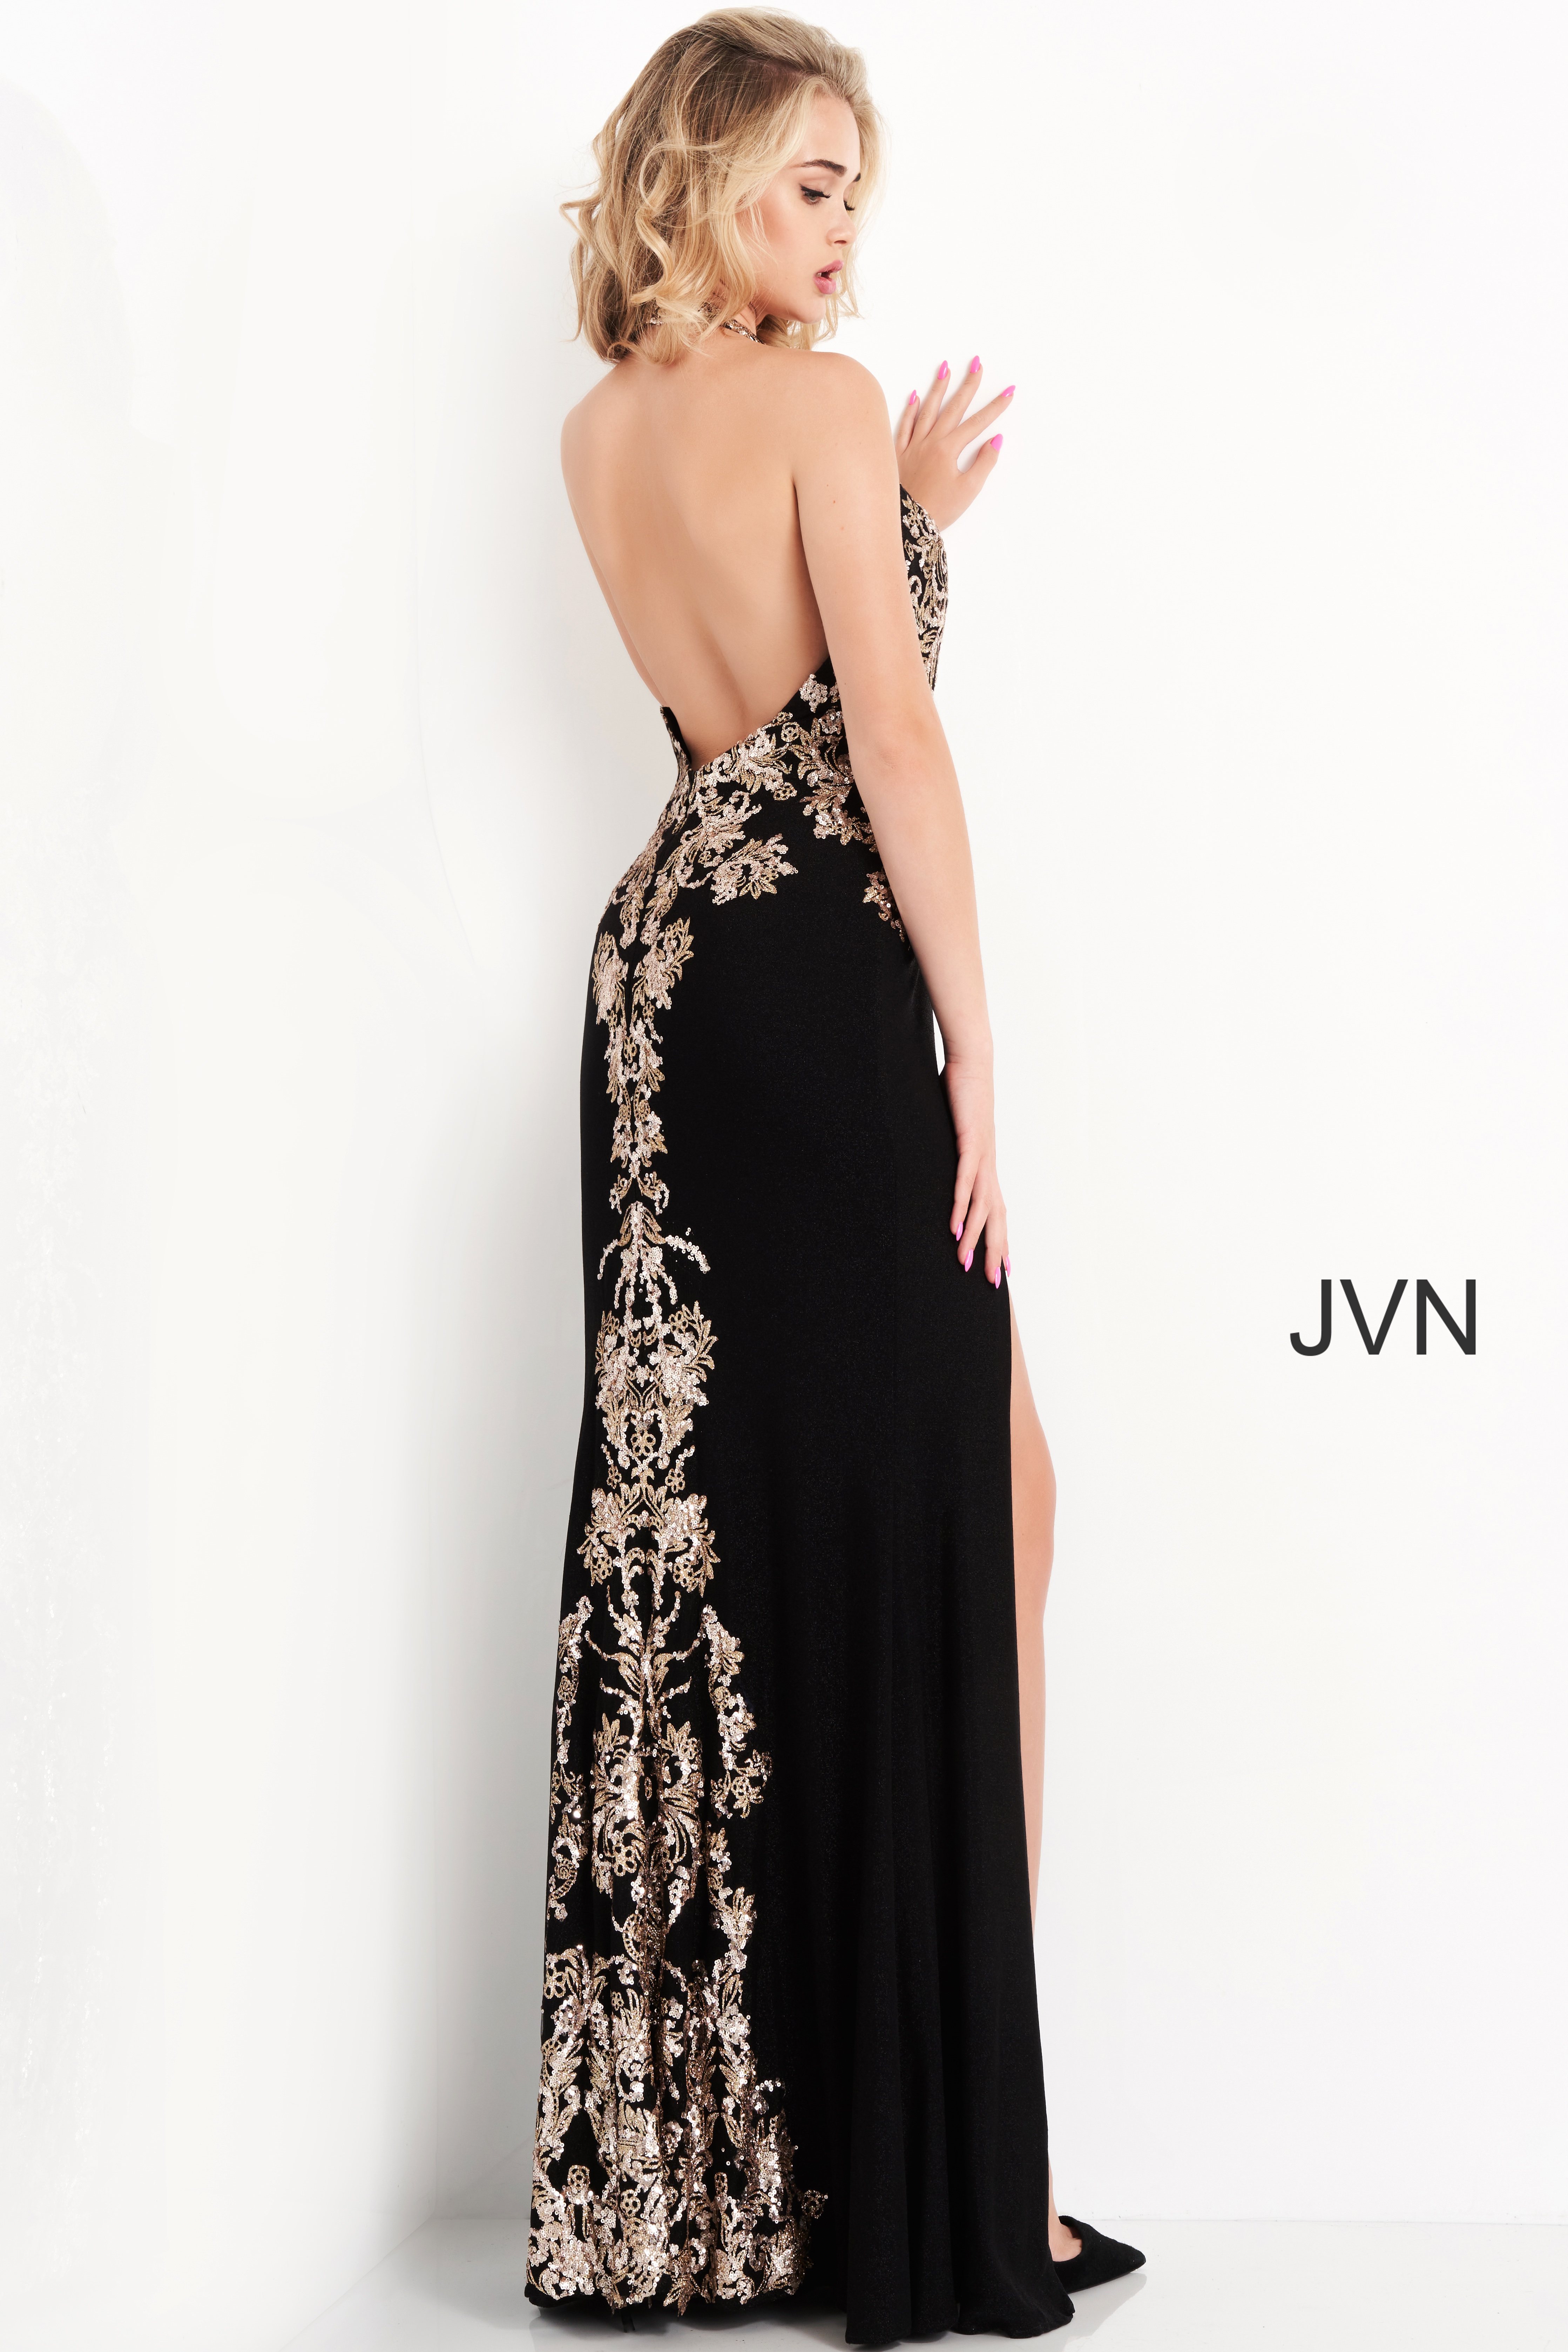 Jvn04791 Black Gold Sequin Embellished Halter Neck Prom Dress